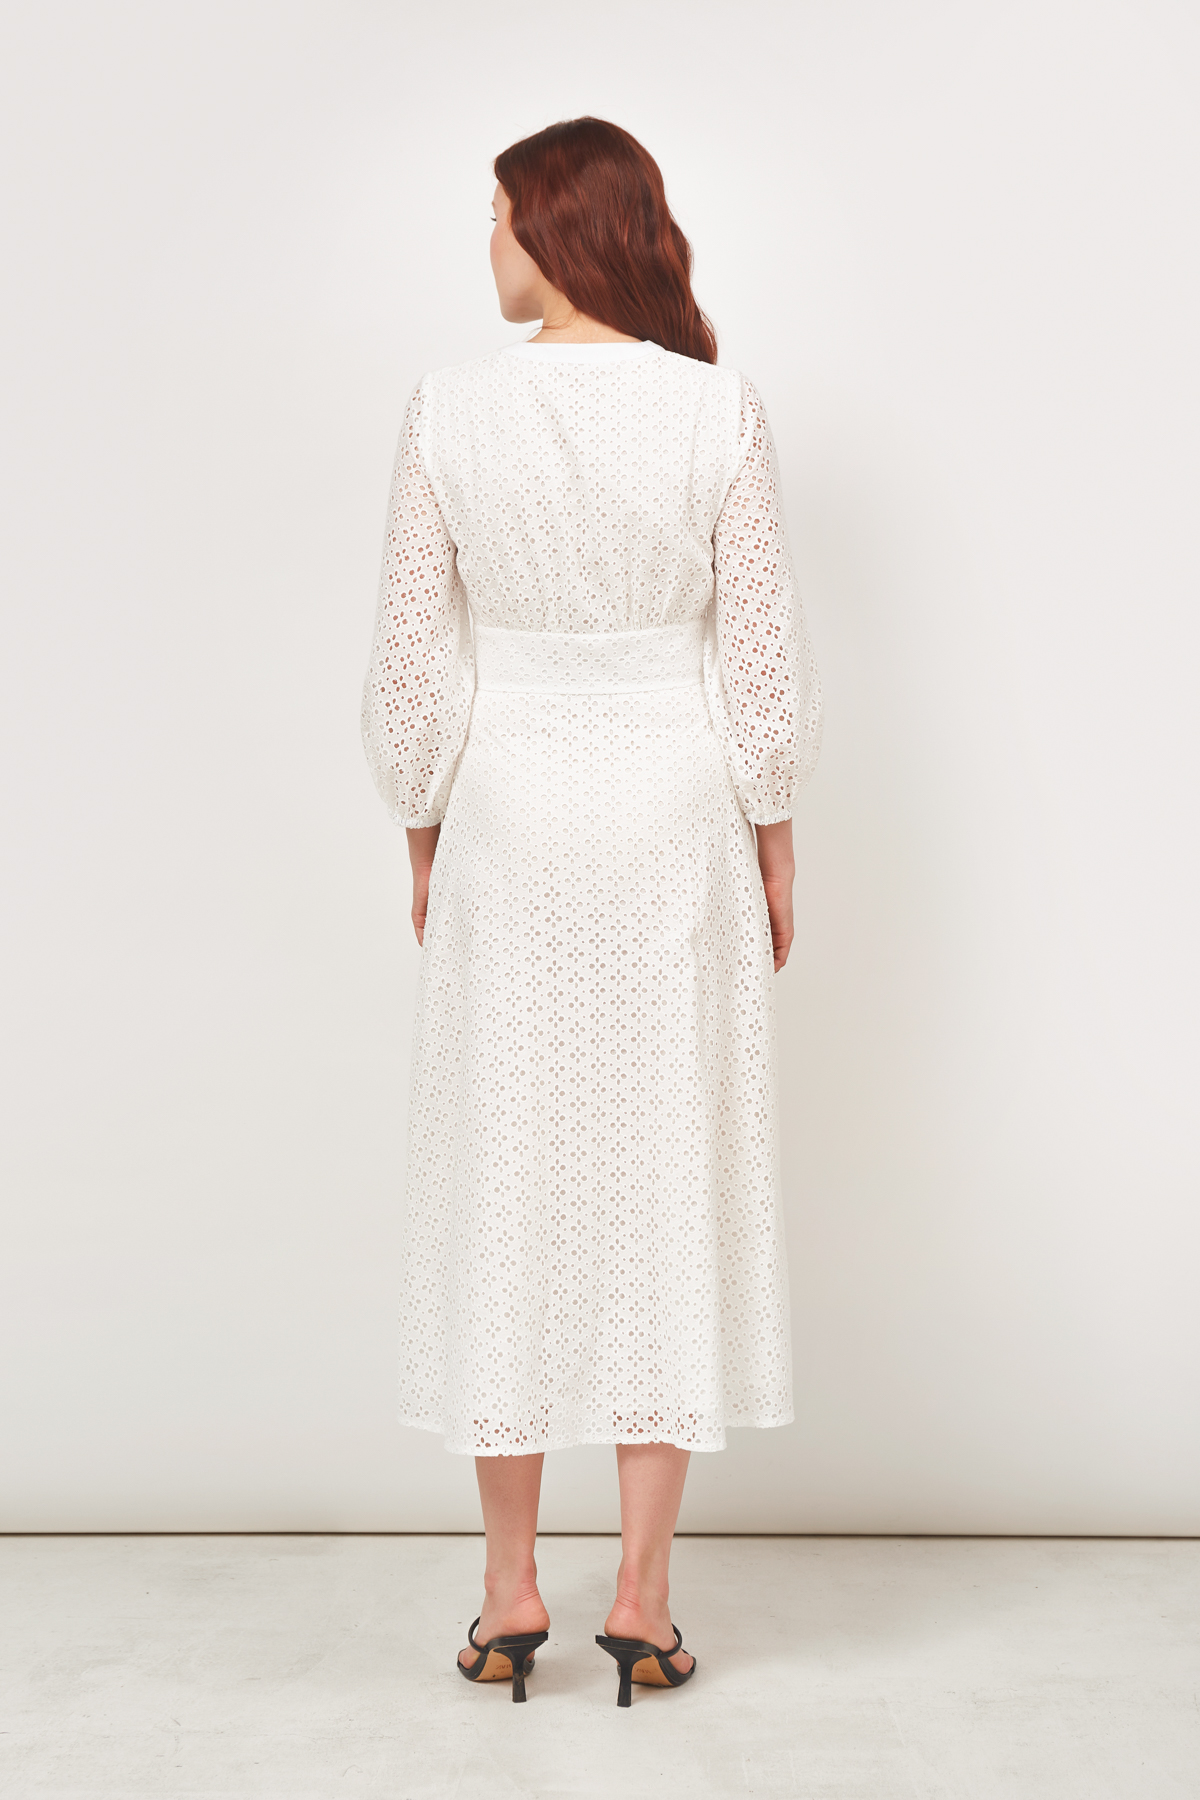 Платье из белого шитья, которое летом мы носили с сандалиями на тонких реме | Instagram